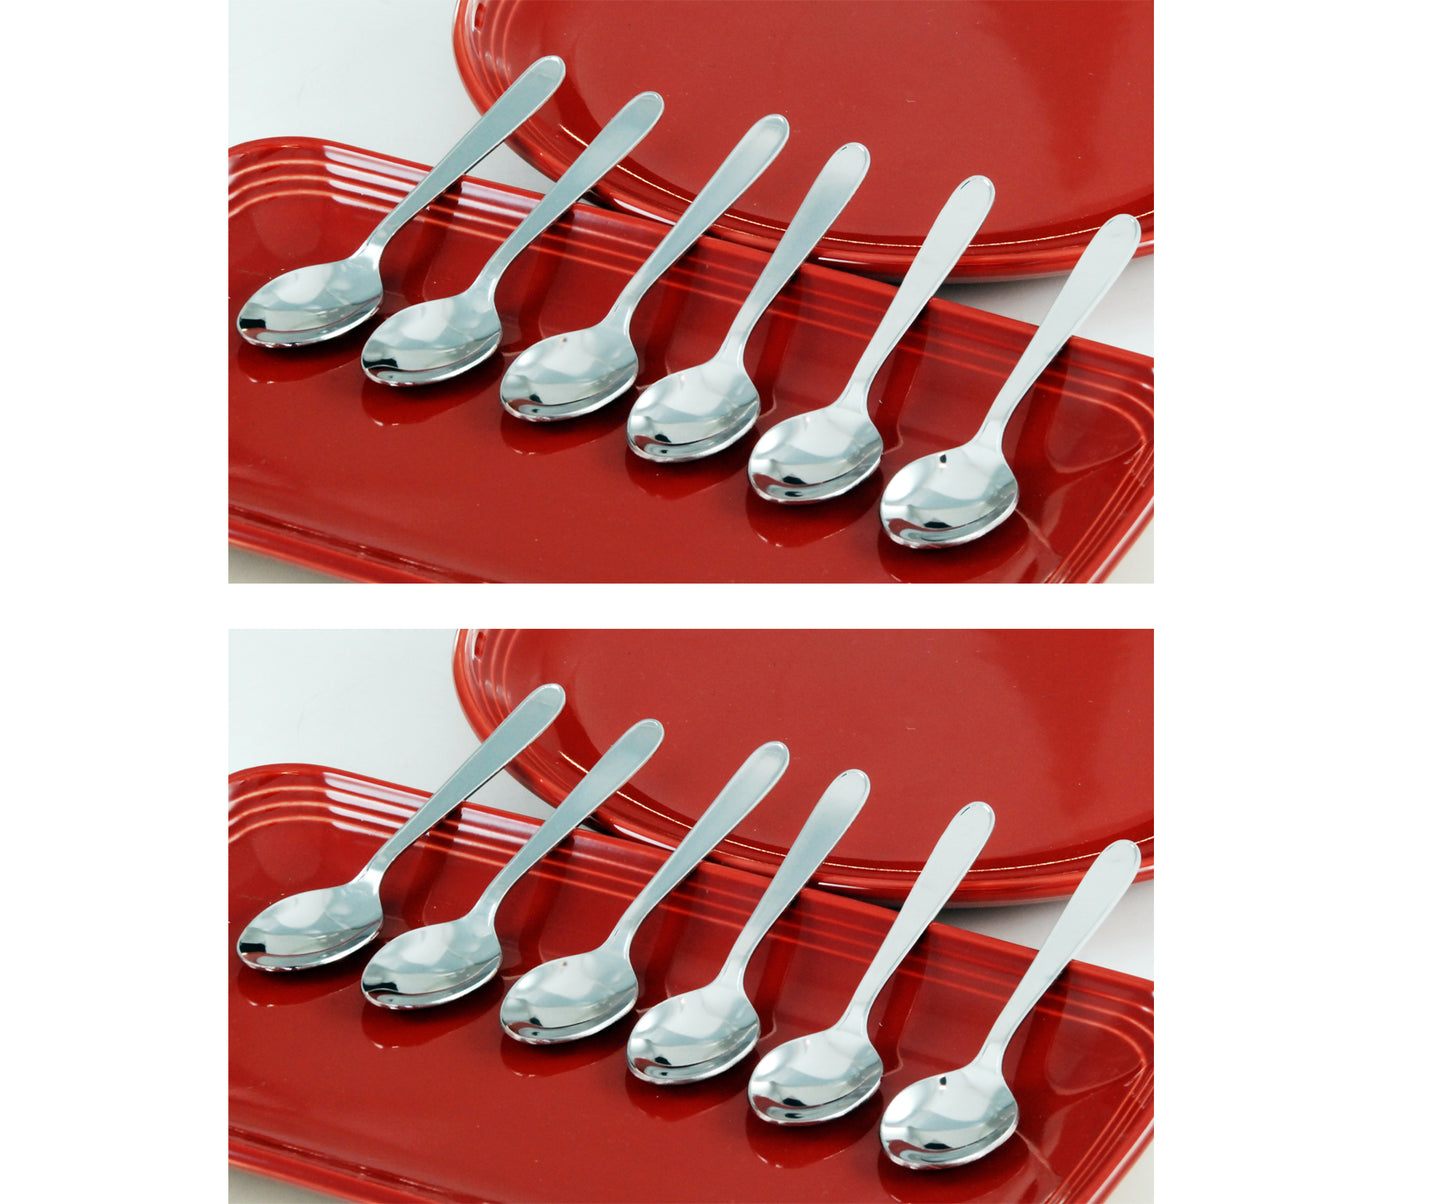 Buckingham Stainless Steel Tea Spoons Teaspoons : Pack of 12